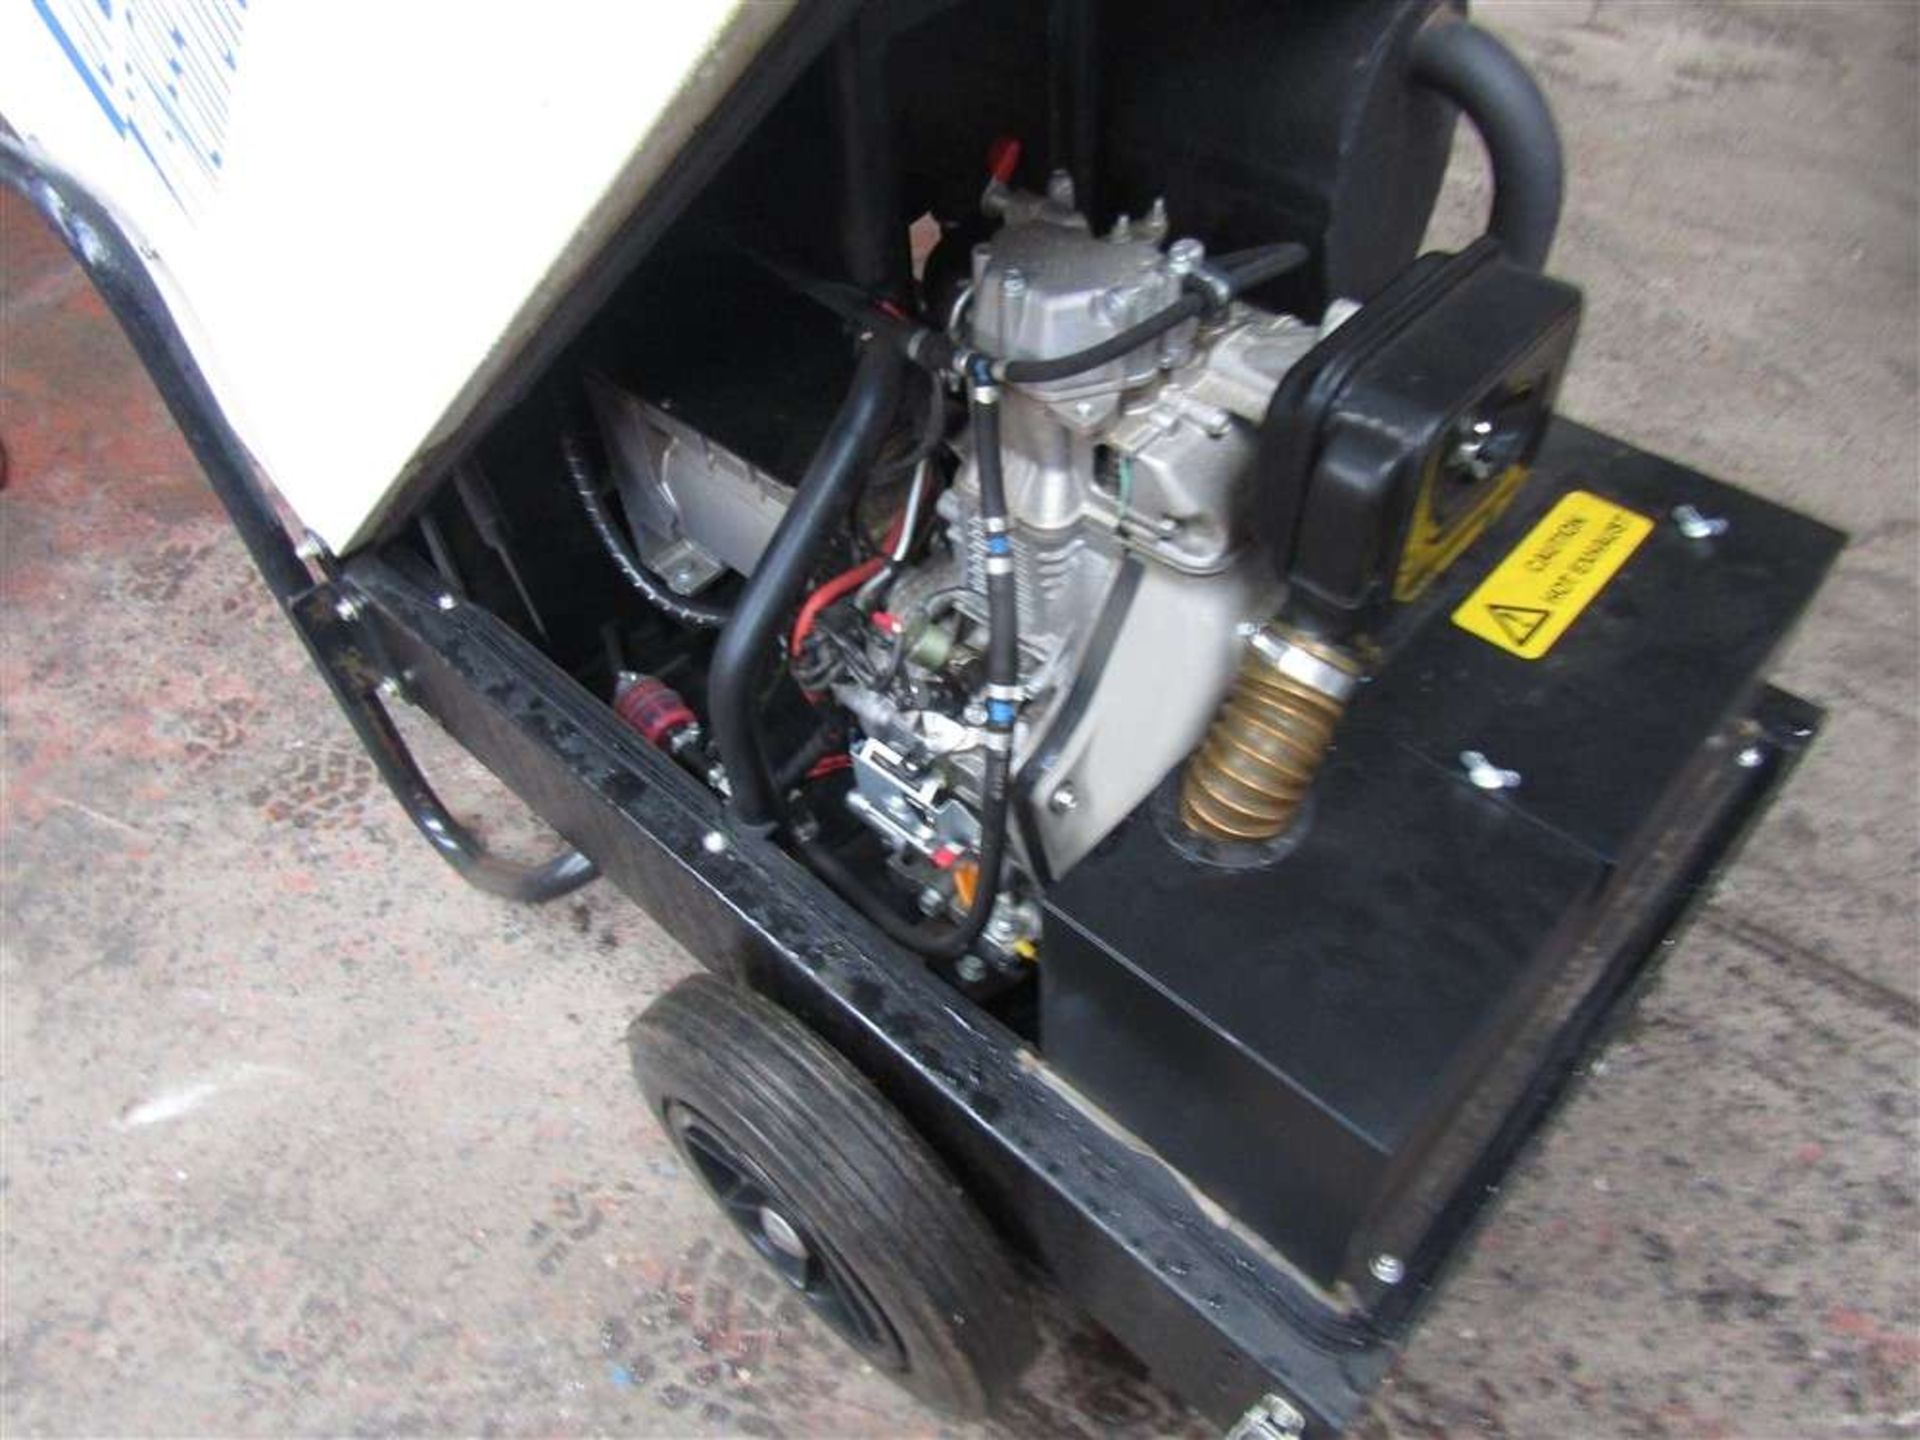 6kva Diesel Generator (Direct Gap) - Image 2 of 2